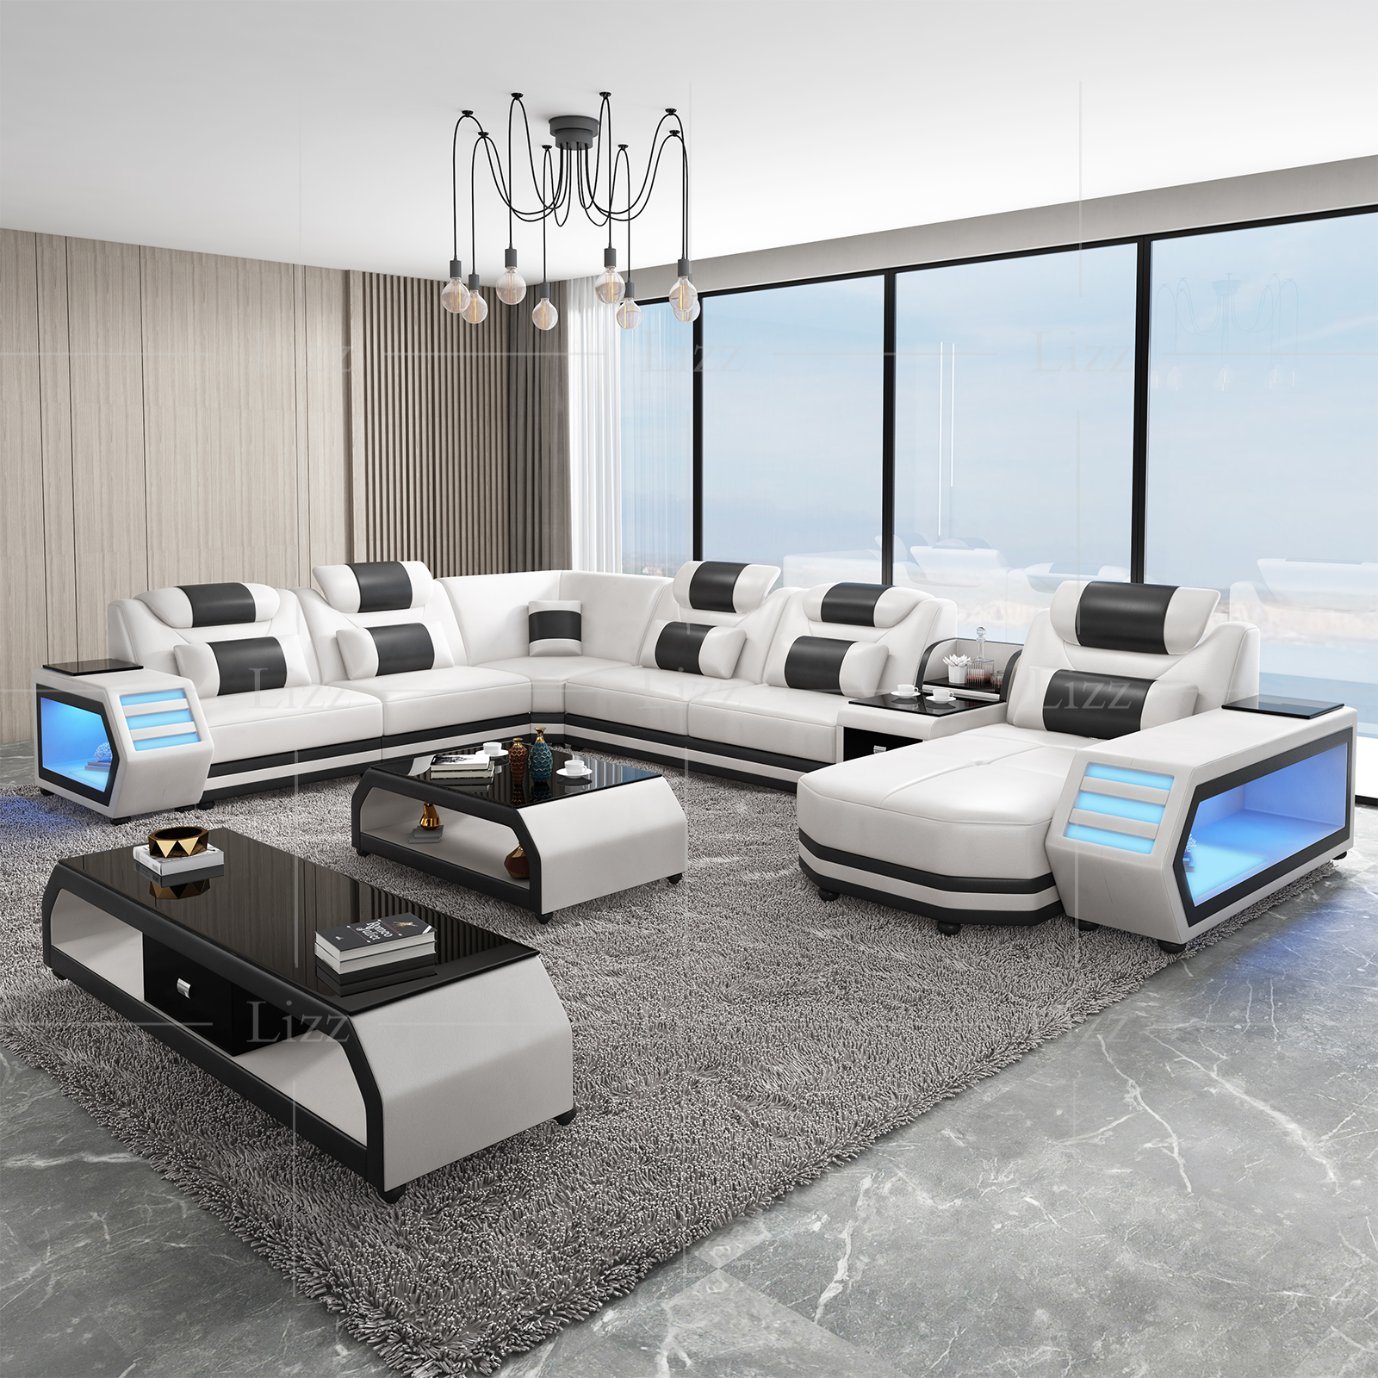 livingroom furniture sets